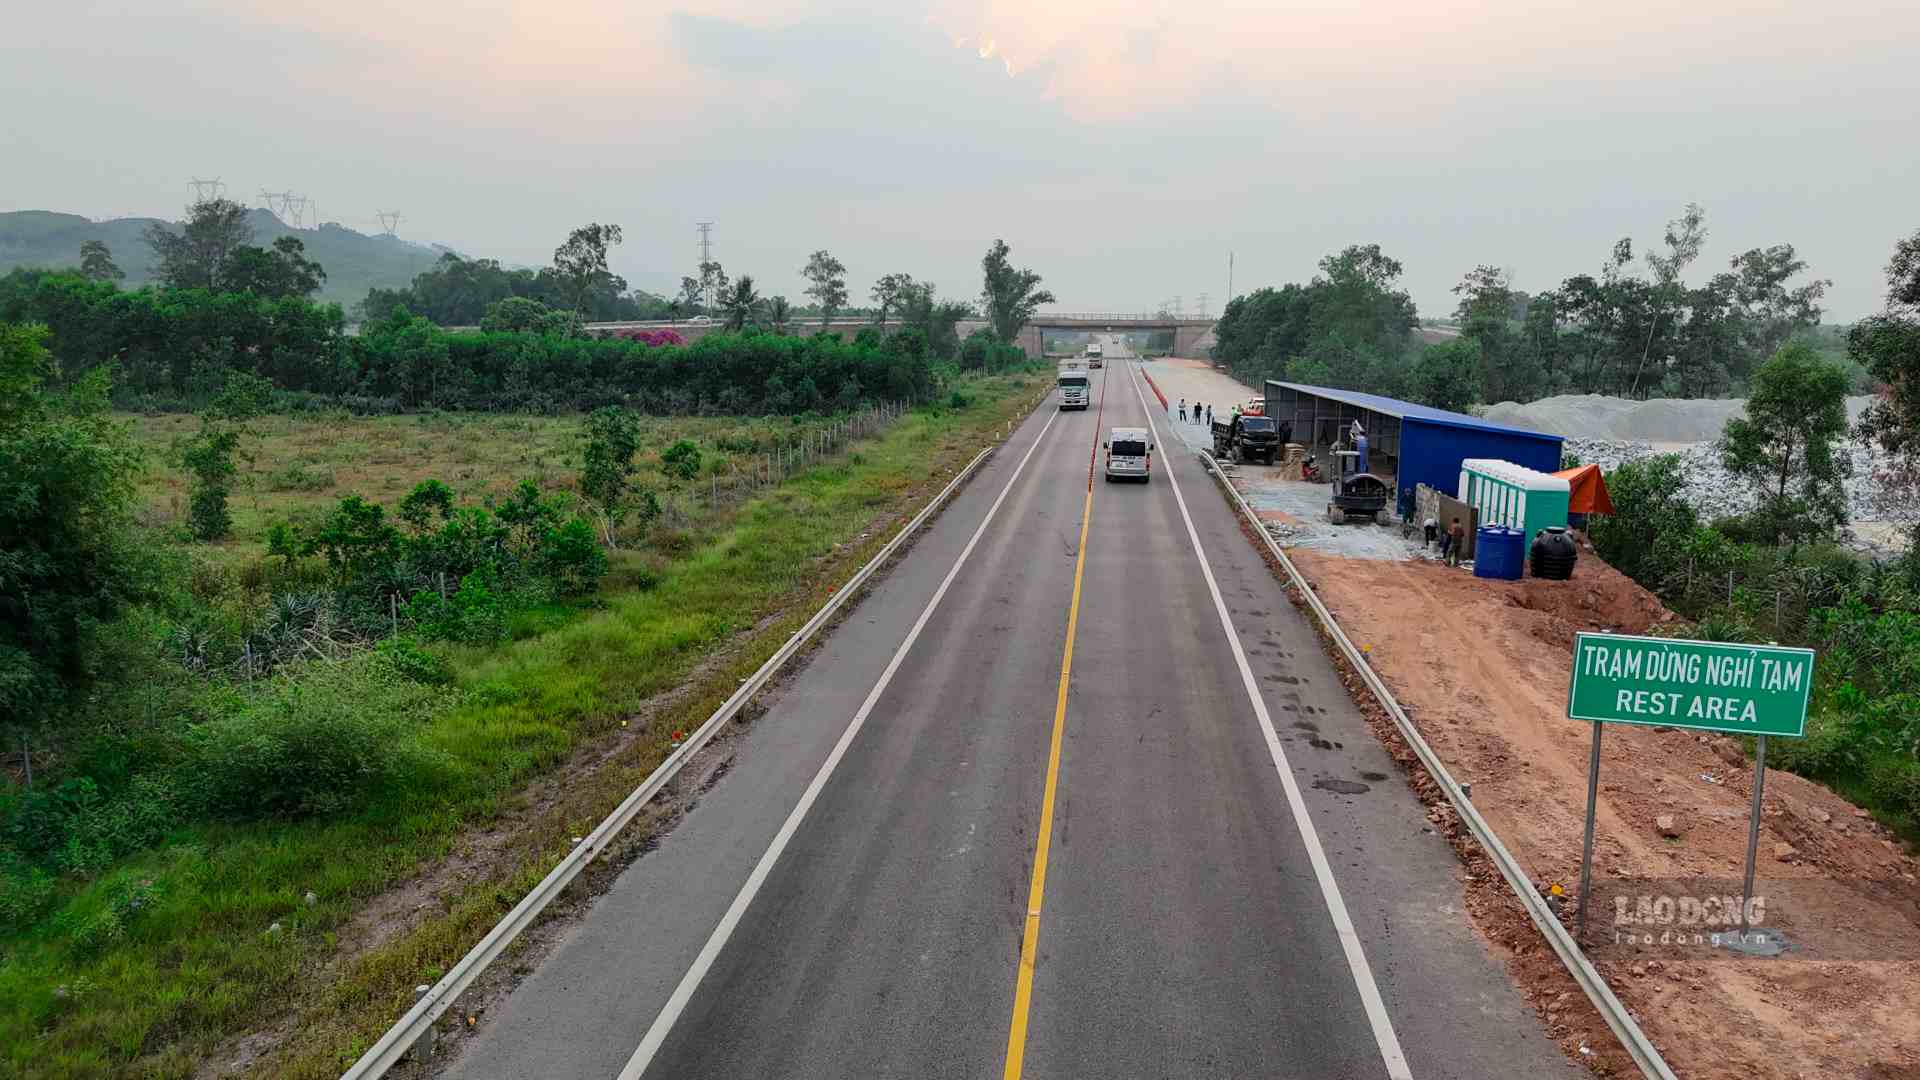 Trên hình là trạm dừng nghỉ phục vụ các phương tiện di chuyển từ Nam ra Bắc tại Km77+800 thuộc phường Hương Thọ, TP. Huế.